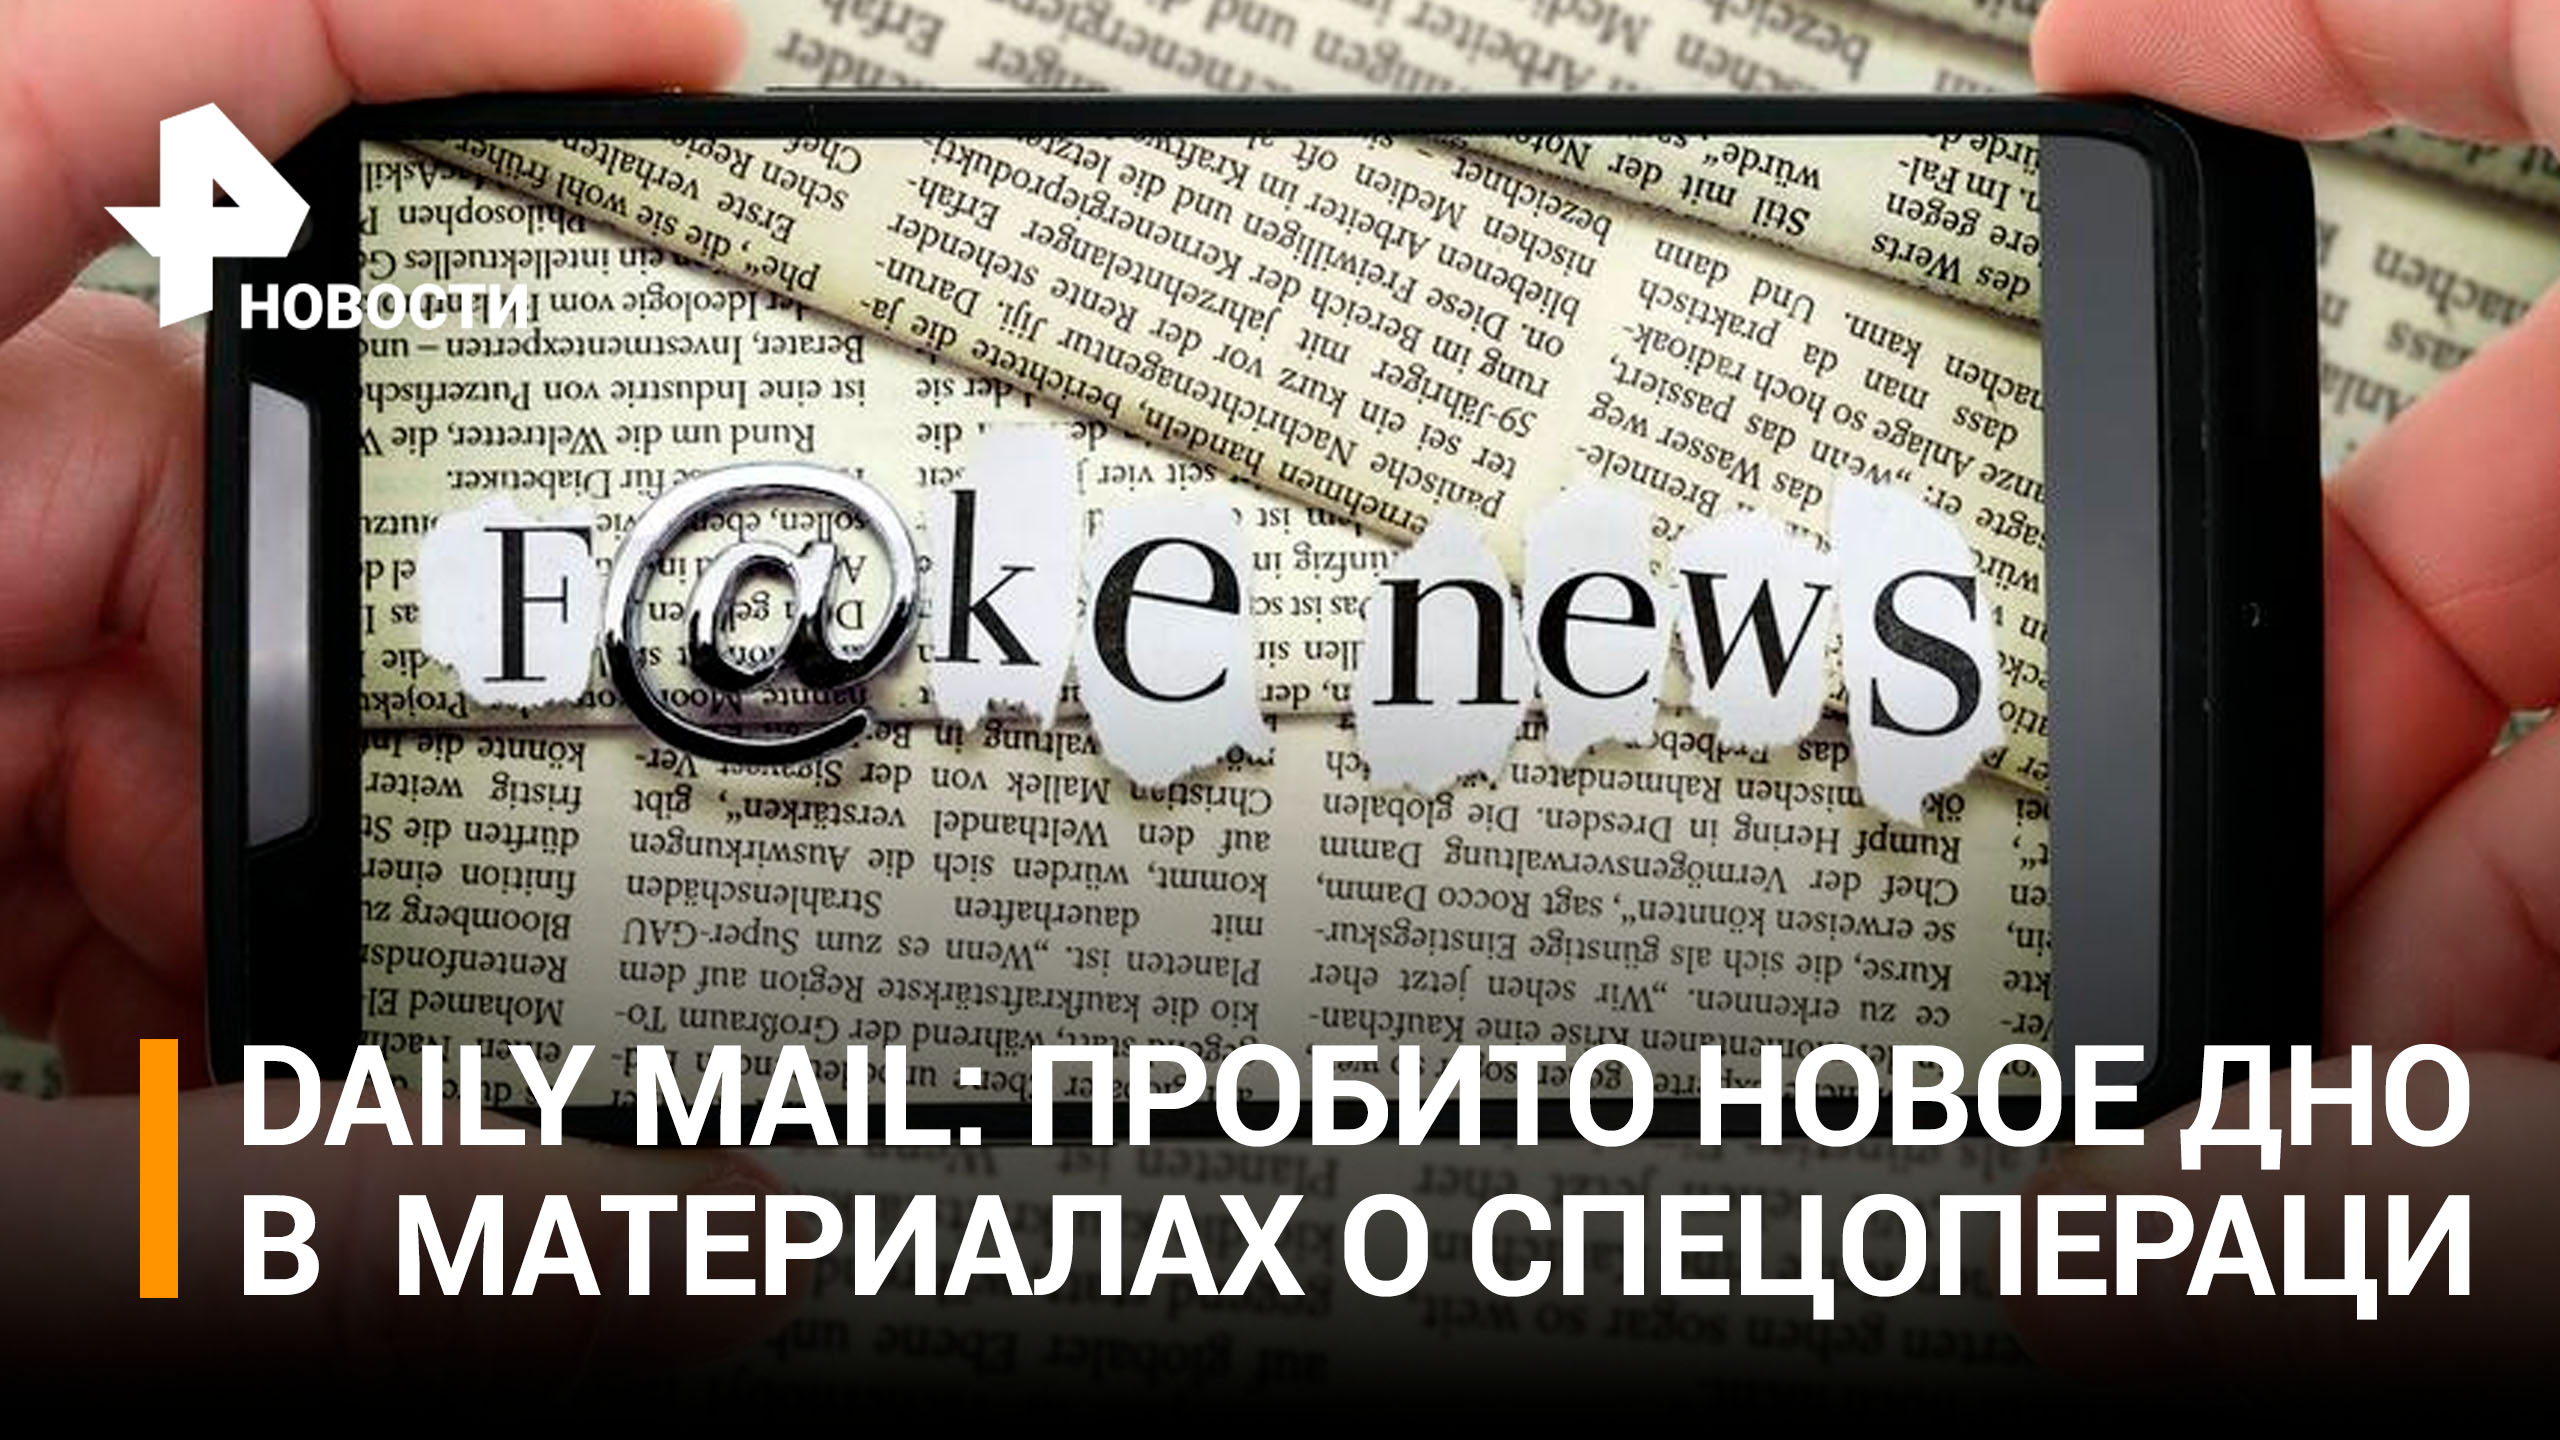 Daily Mail распространила фейк о ВС РФ, спутав "трехсотого" и "триста" / РЕН Новости